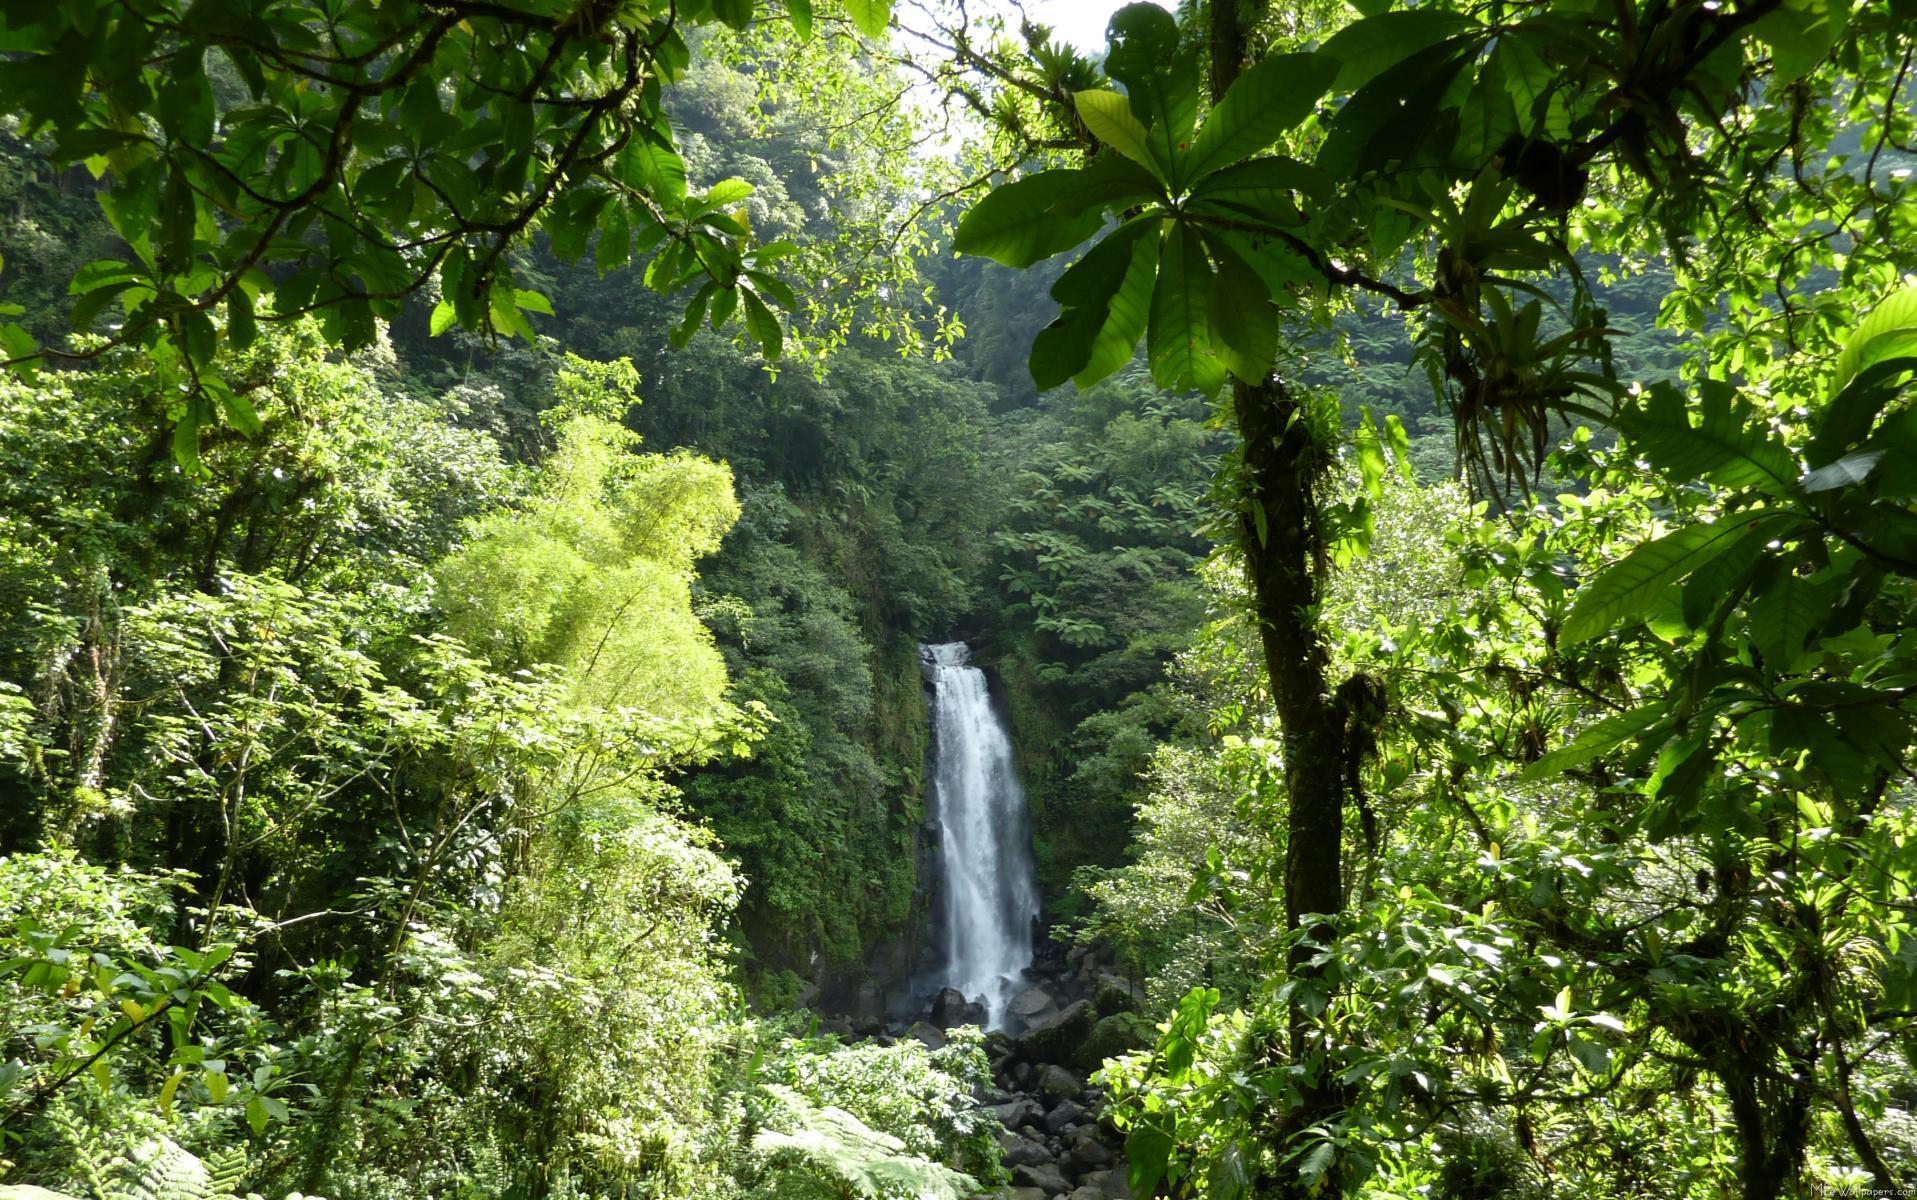 Rain Forest Background